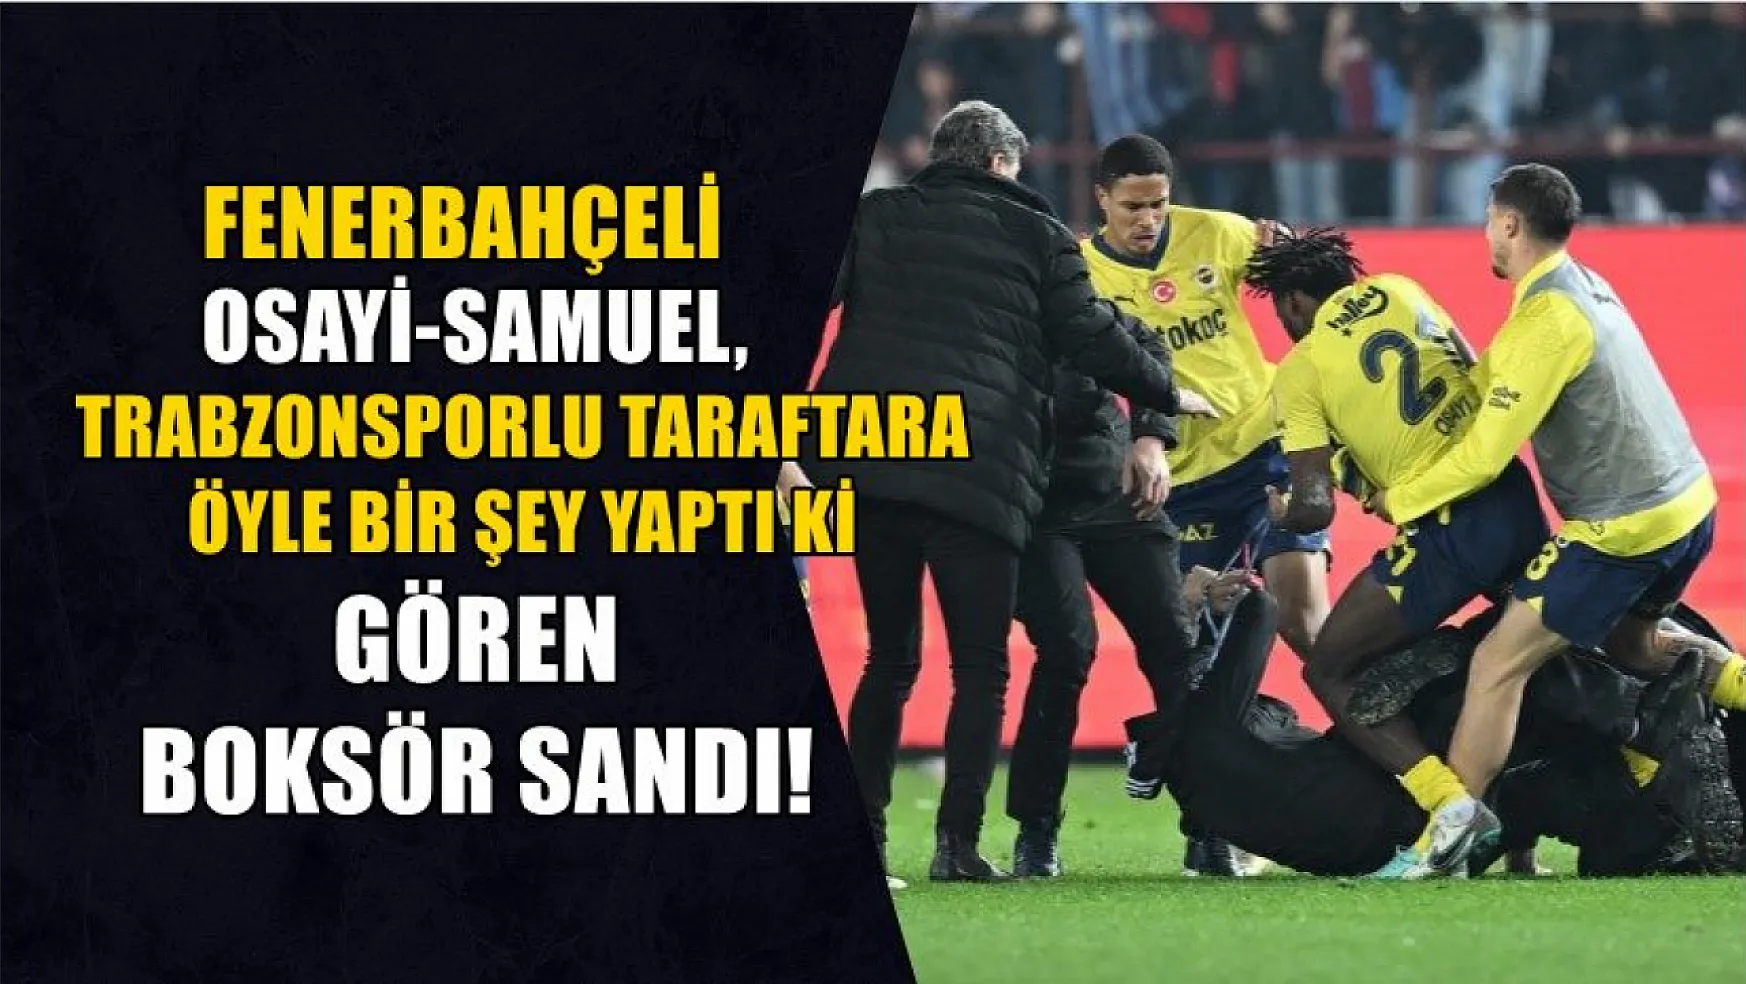 Fenerbahçeli Osayi-Samuel, Trabzonsporlu taraftara öyle bir şey yaptı ki, Gören boksör sandı!